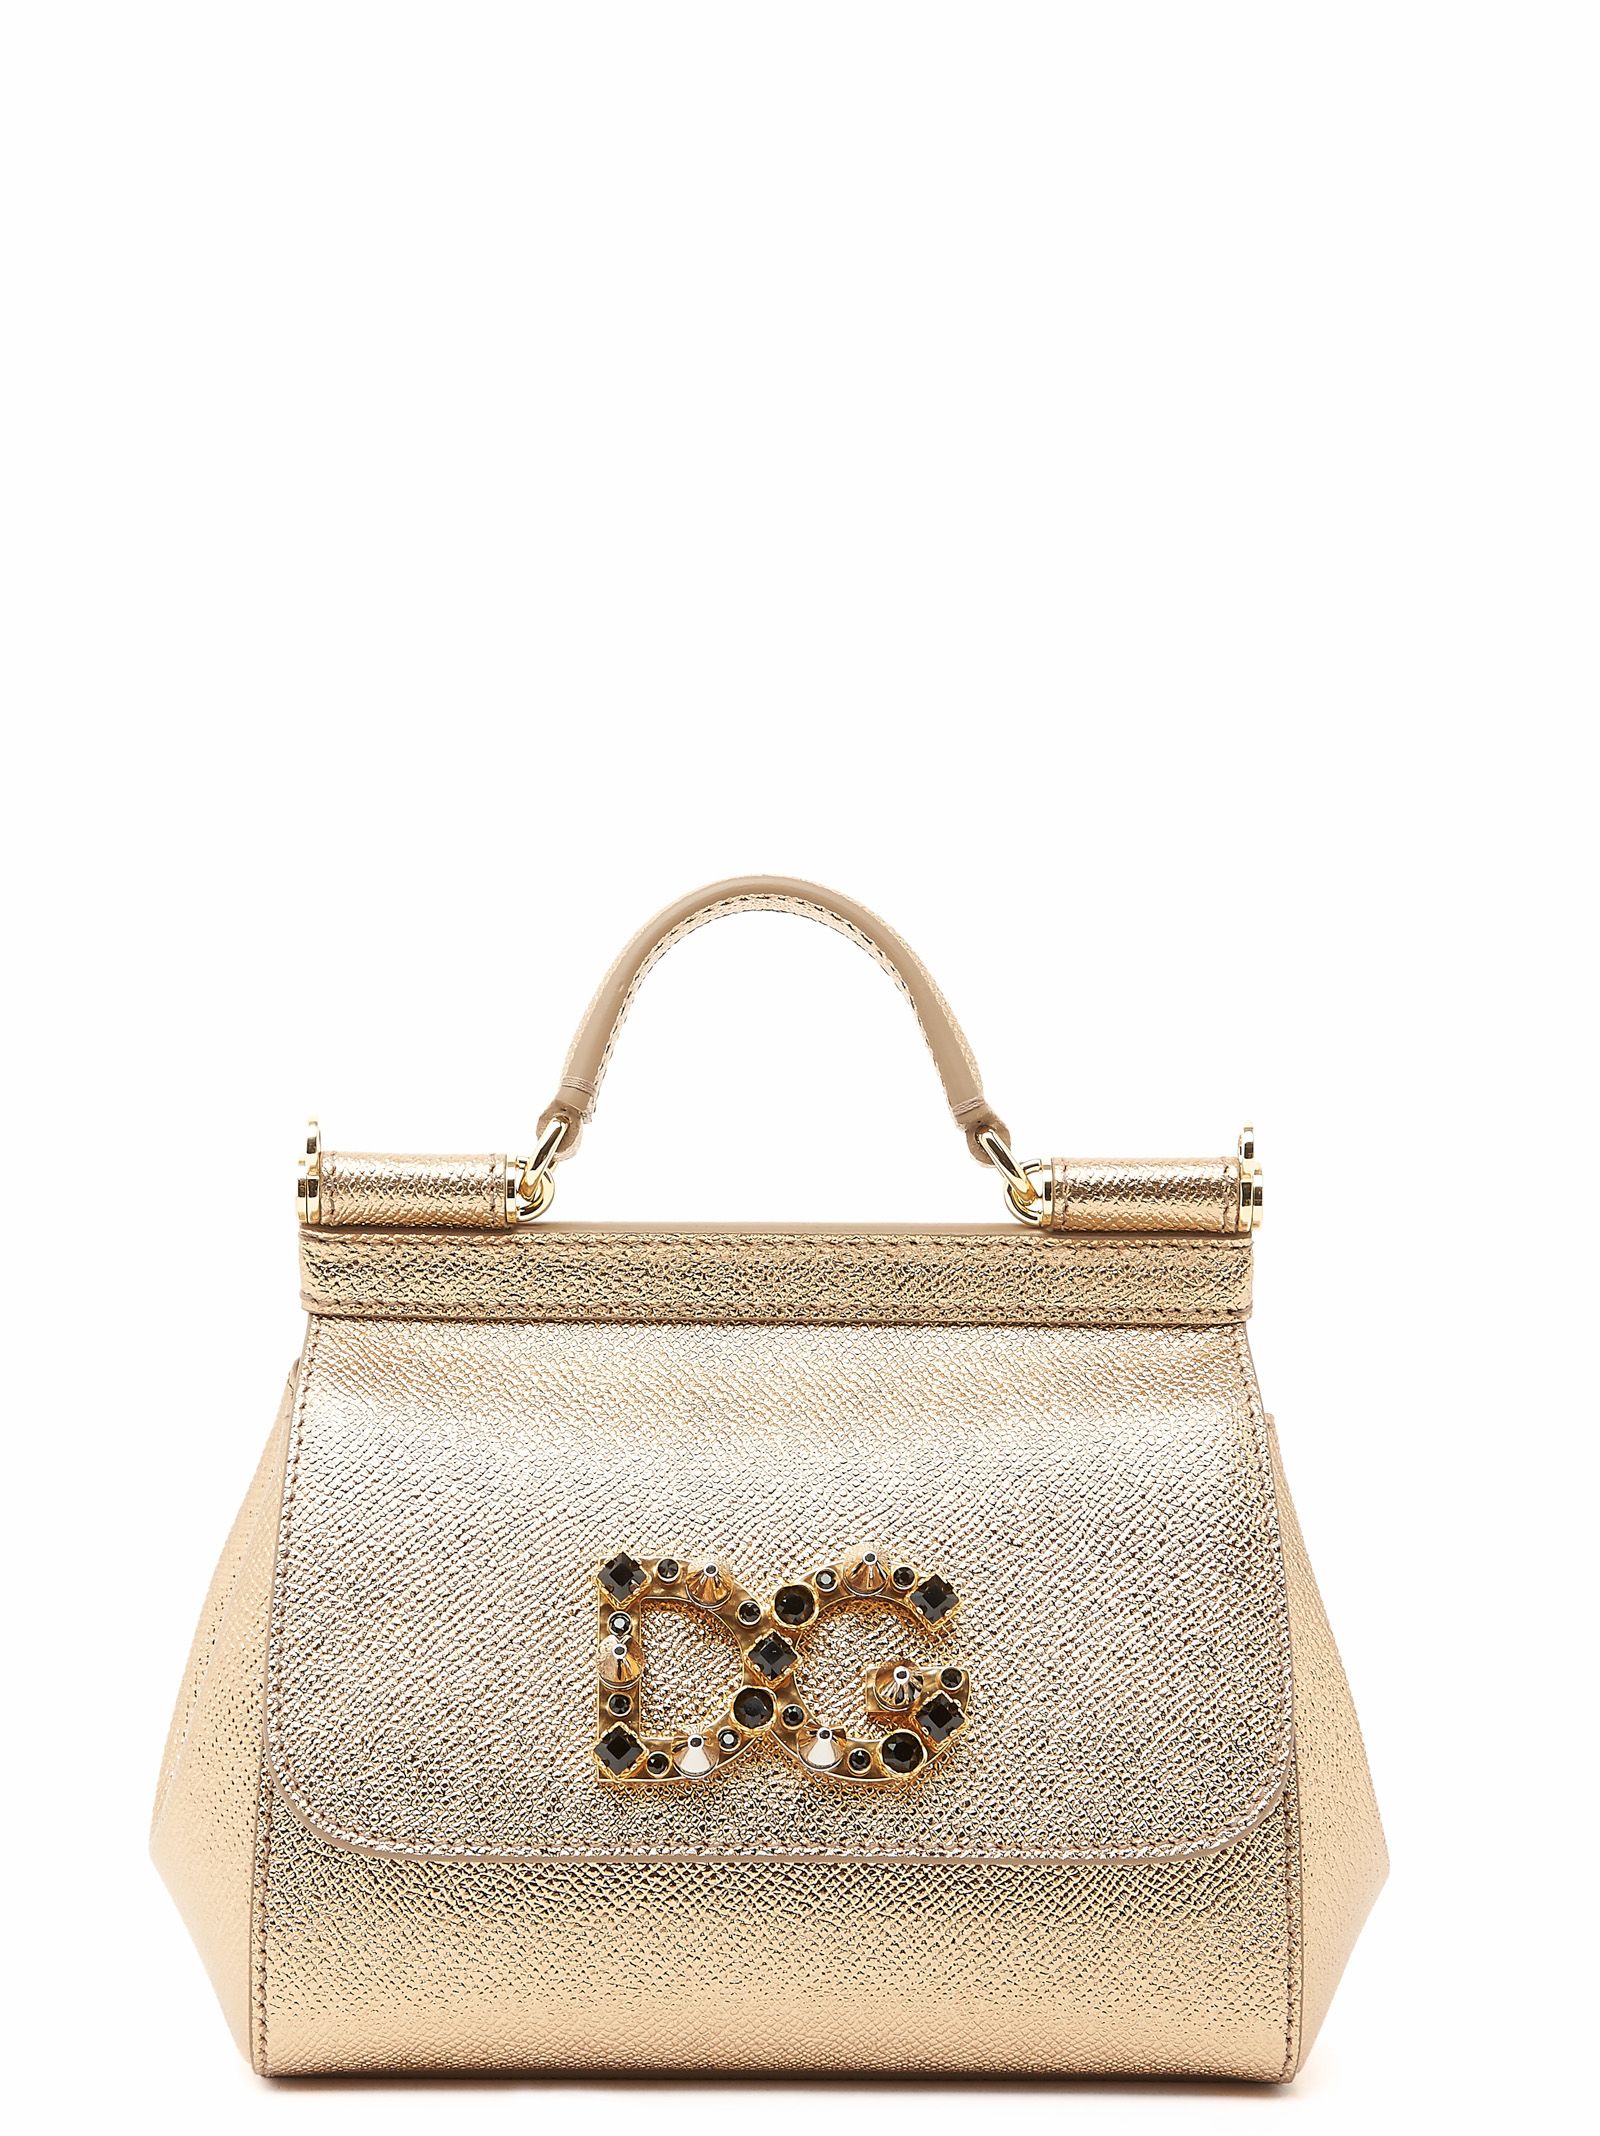 Dolce & Gabbana - Dolce & Gabbana Handbag - Gold, Women's Totes | Italist